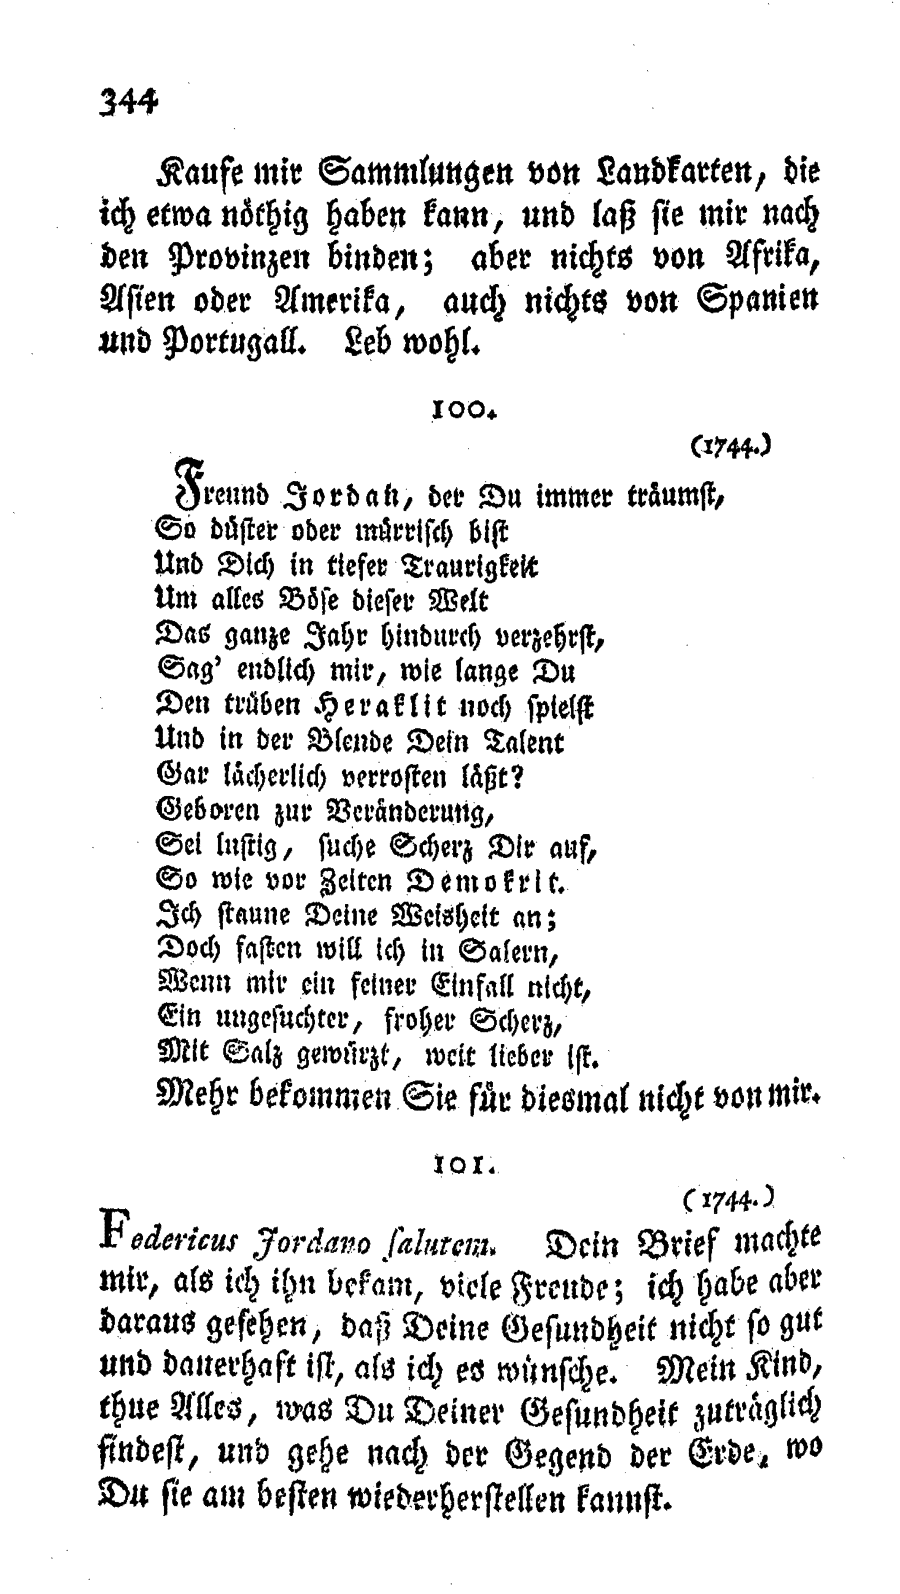 S. 344, Obj. 2